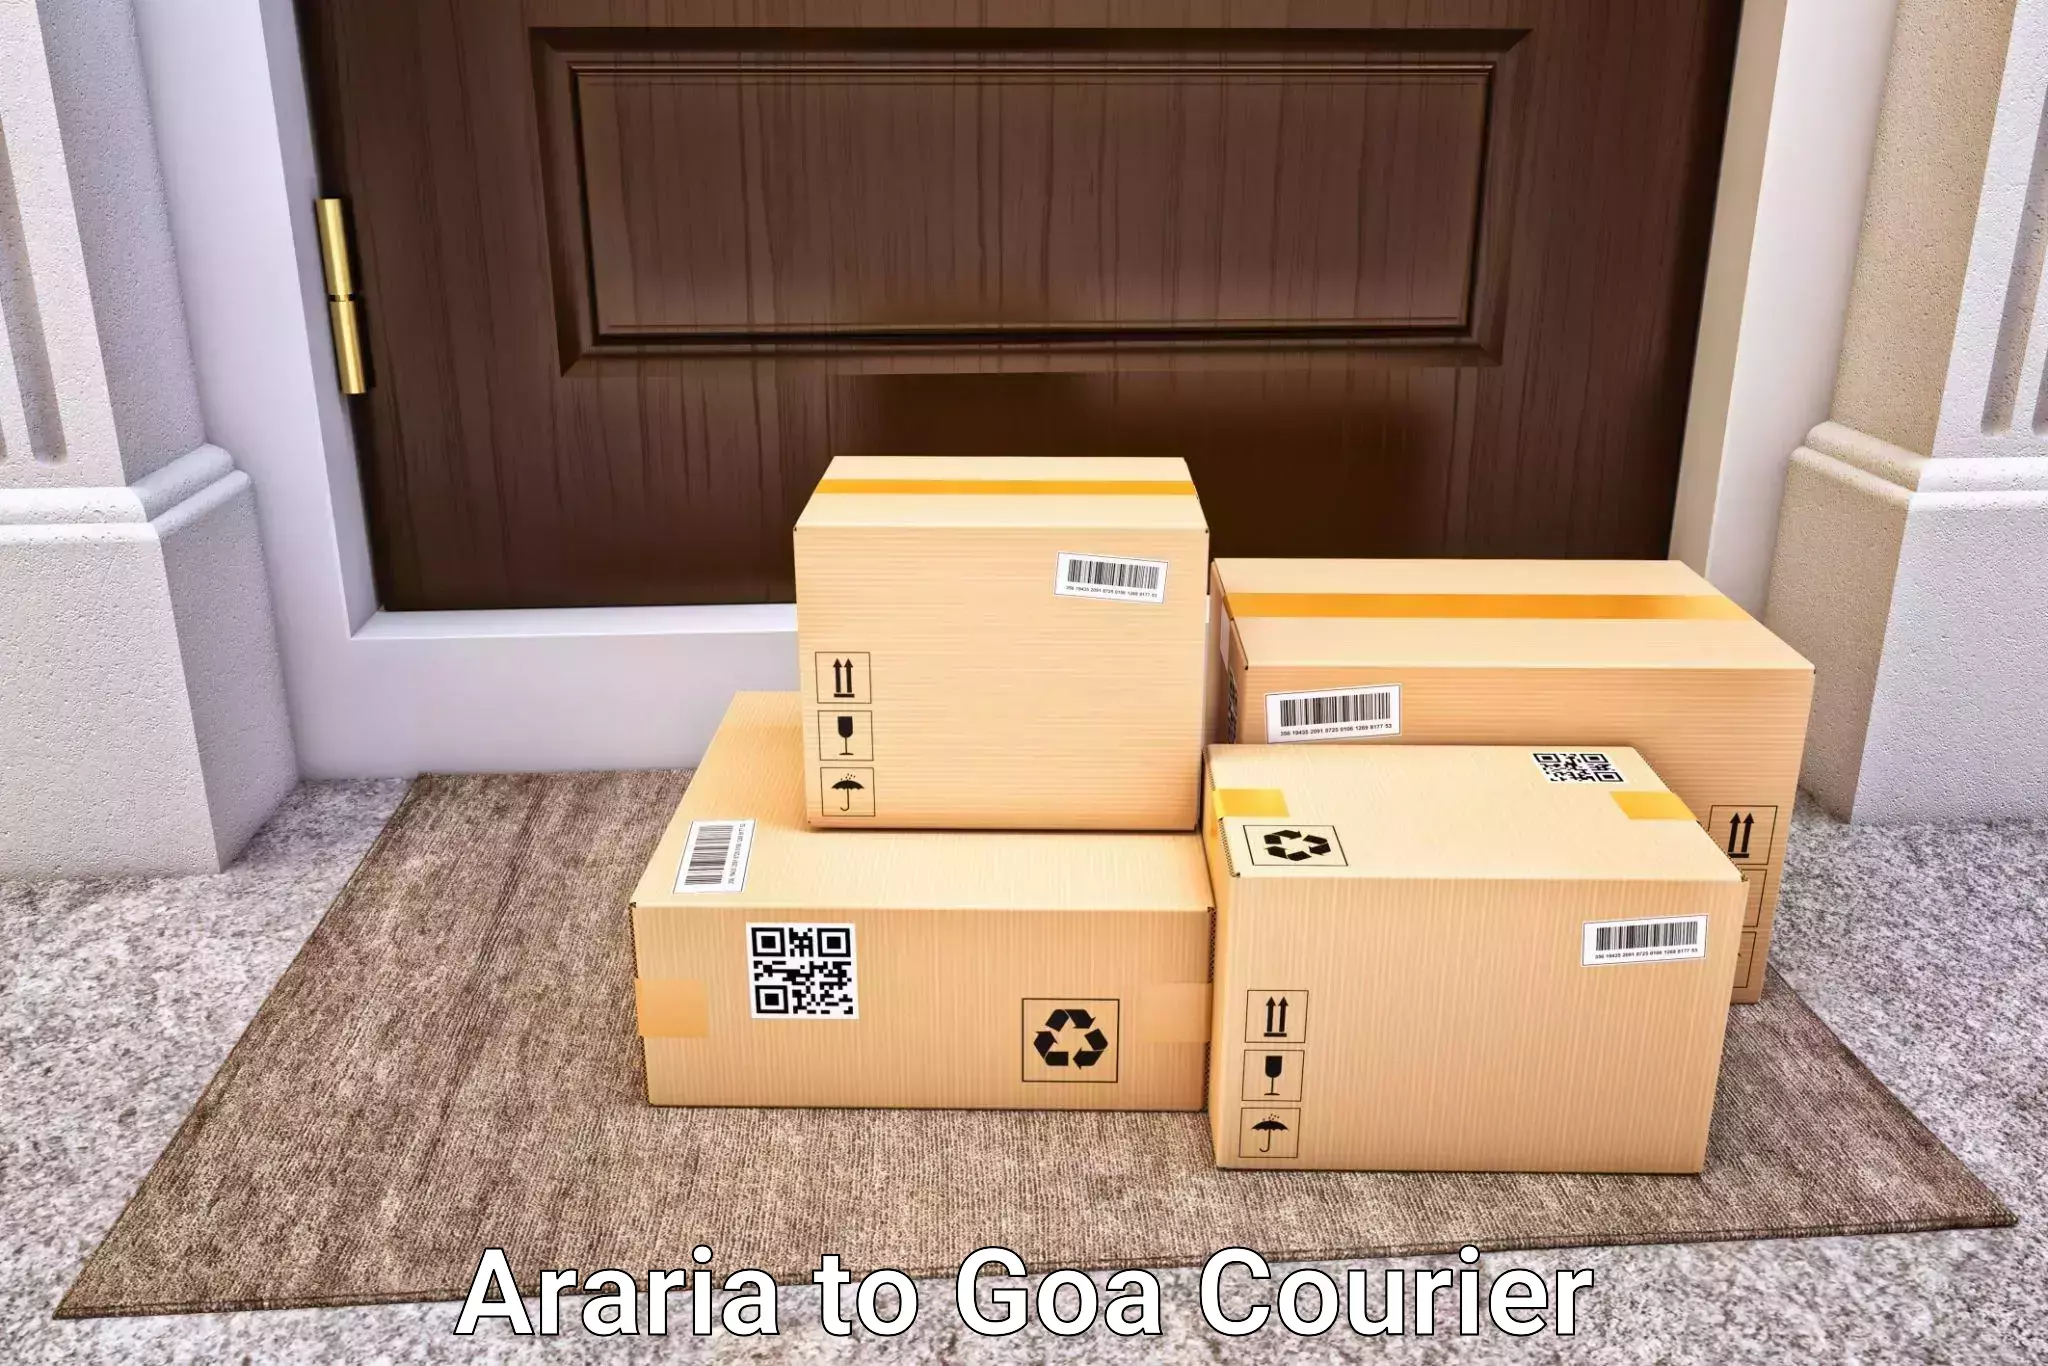 Door to door luggage delivery Araria to Panaji